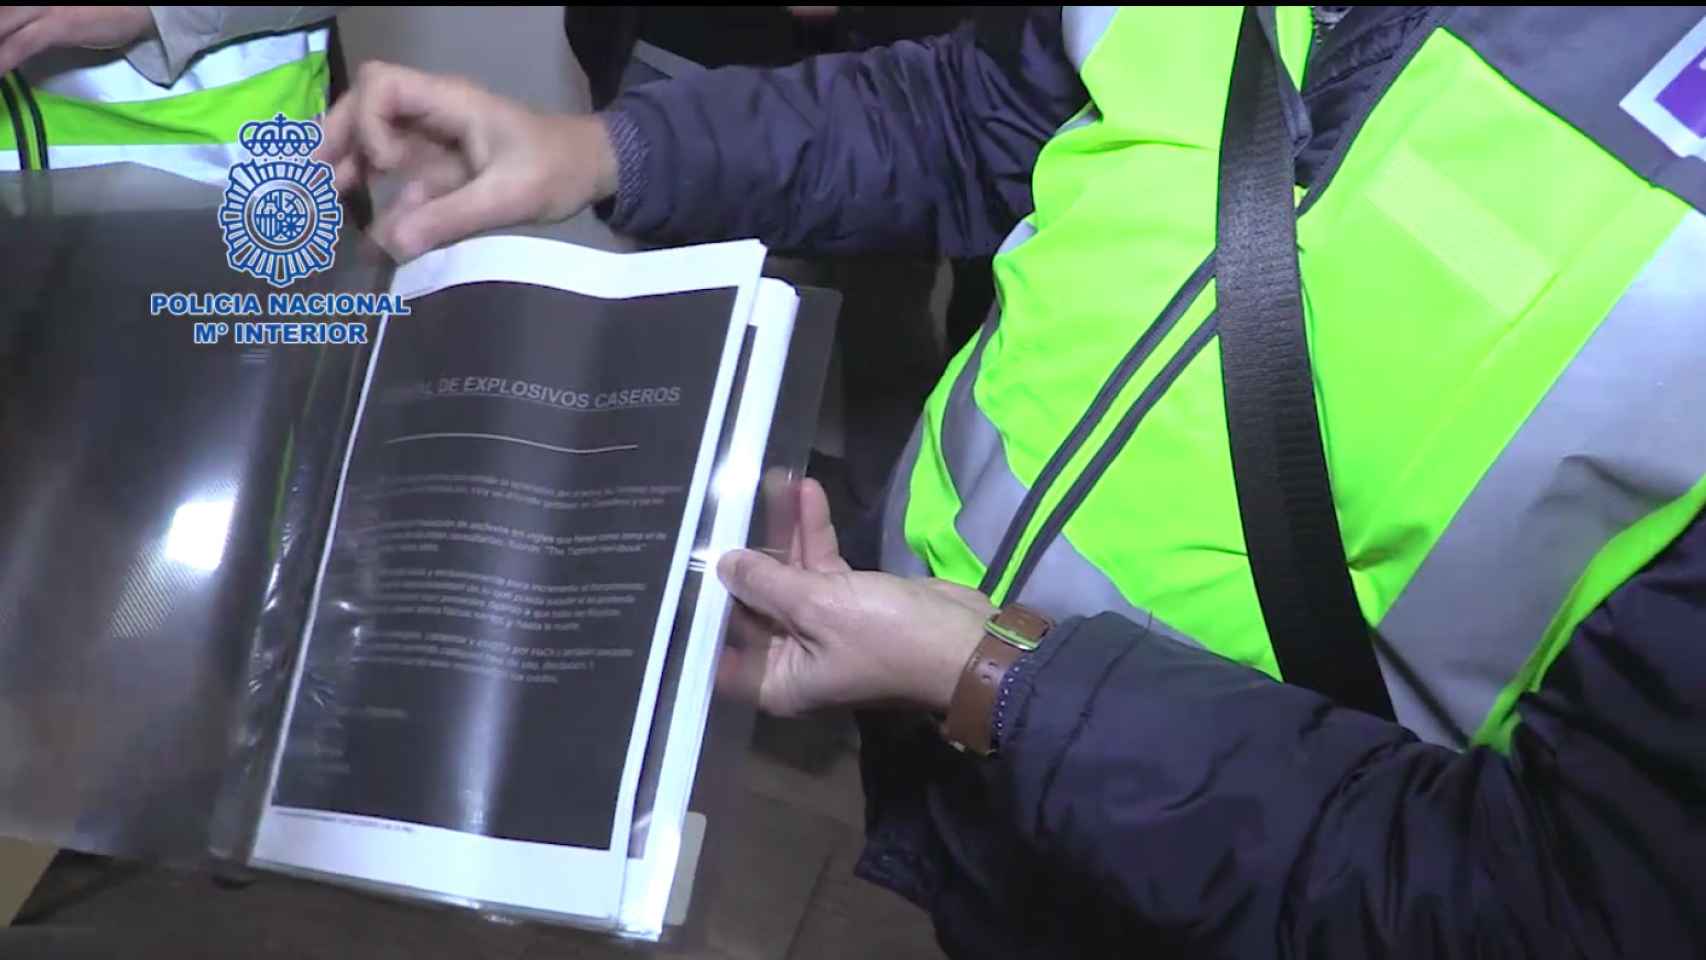 Este manual de fabricación de explosivos pertenecía a uno de los detenidos